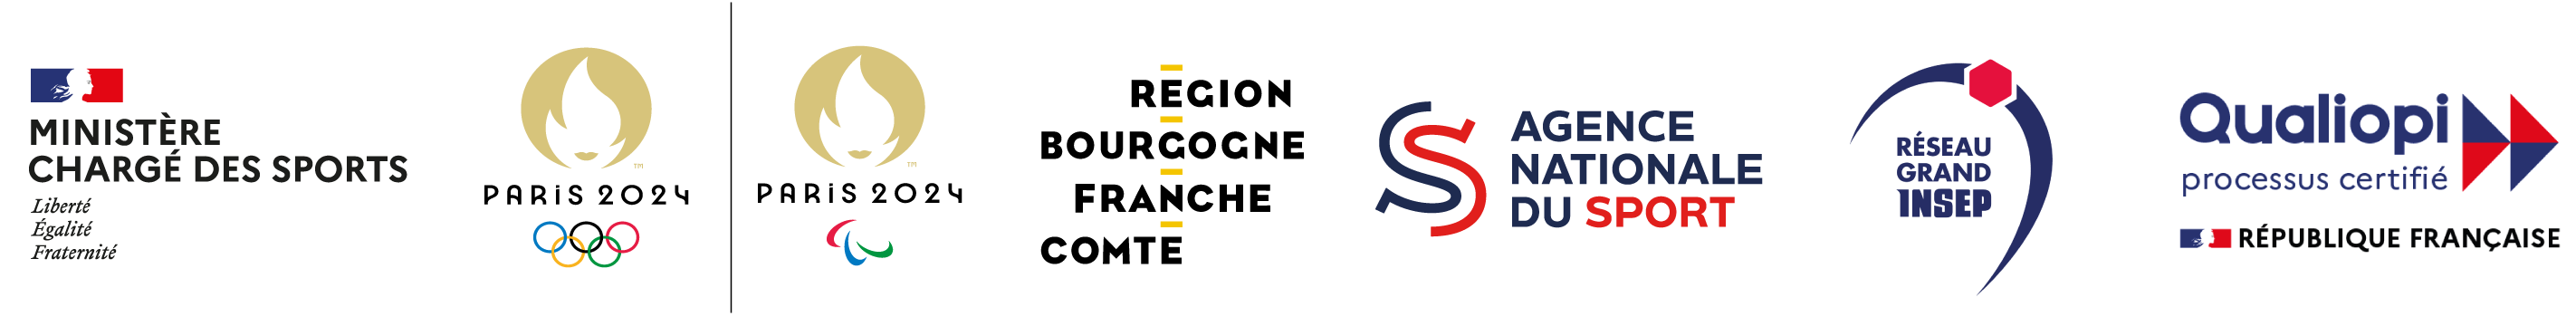 logos des partenaires du Creps Bourgogne Franche-Comté - Ministère - Jeux Olympiques 2024 de Paris - Agence Nationale du Sport - Qualiopi